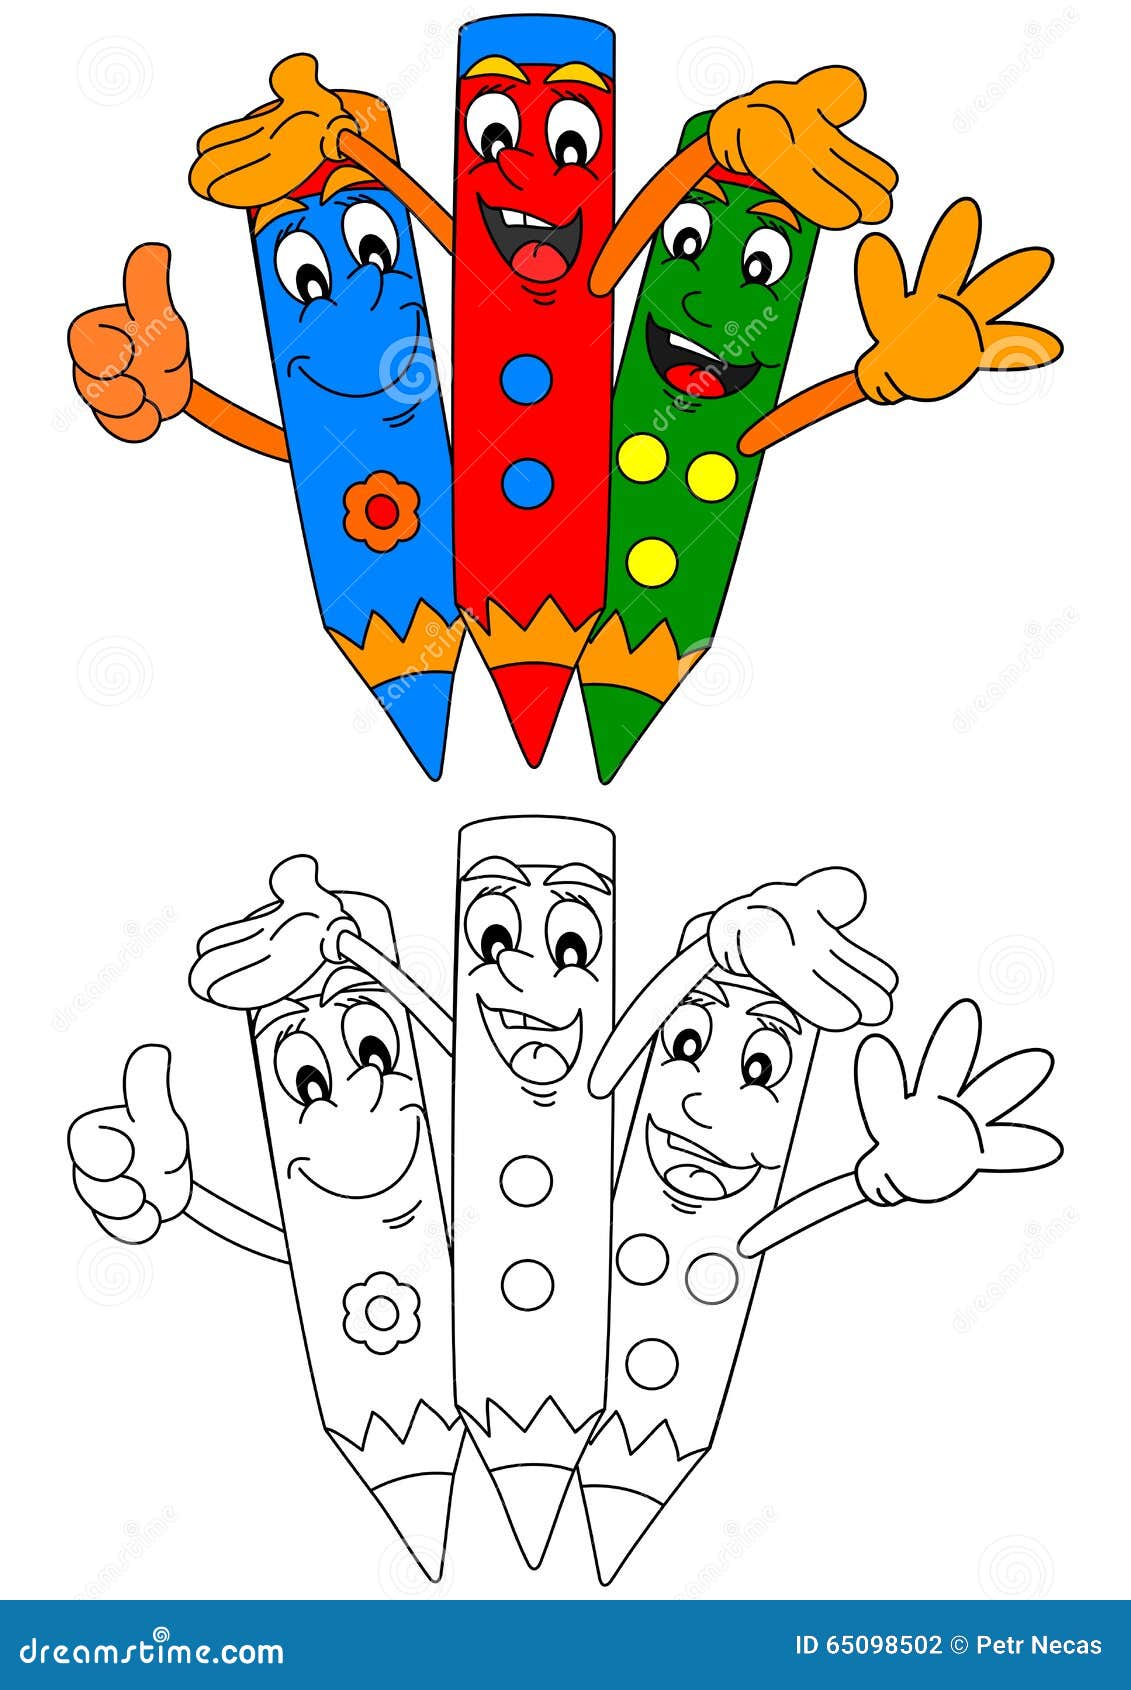 Tre matite colorate che sorridono e libri da colorare per i bambini